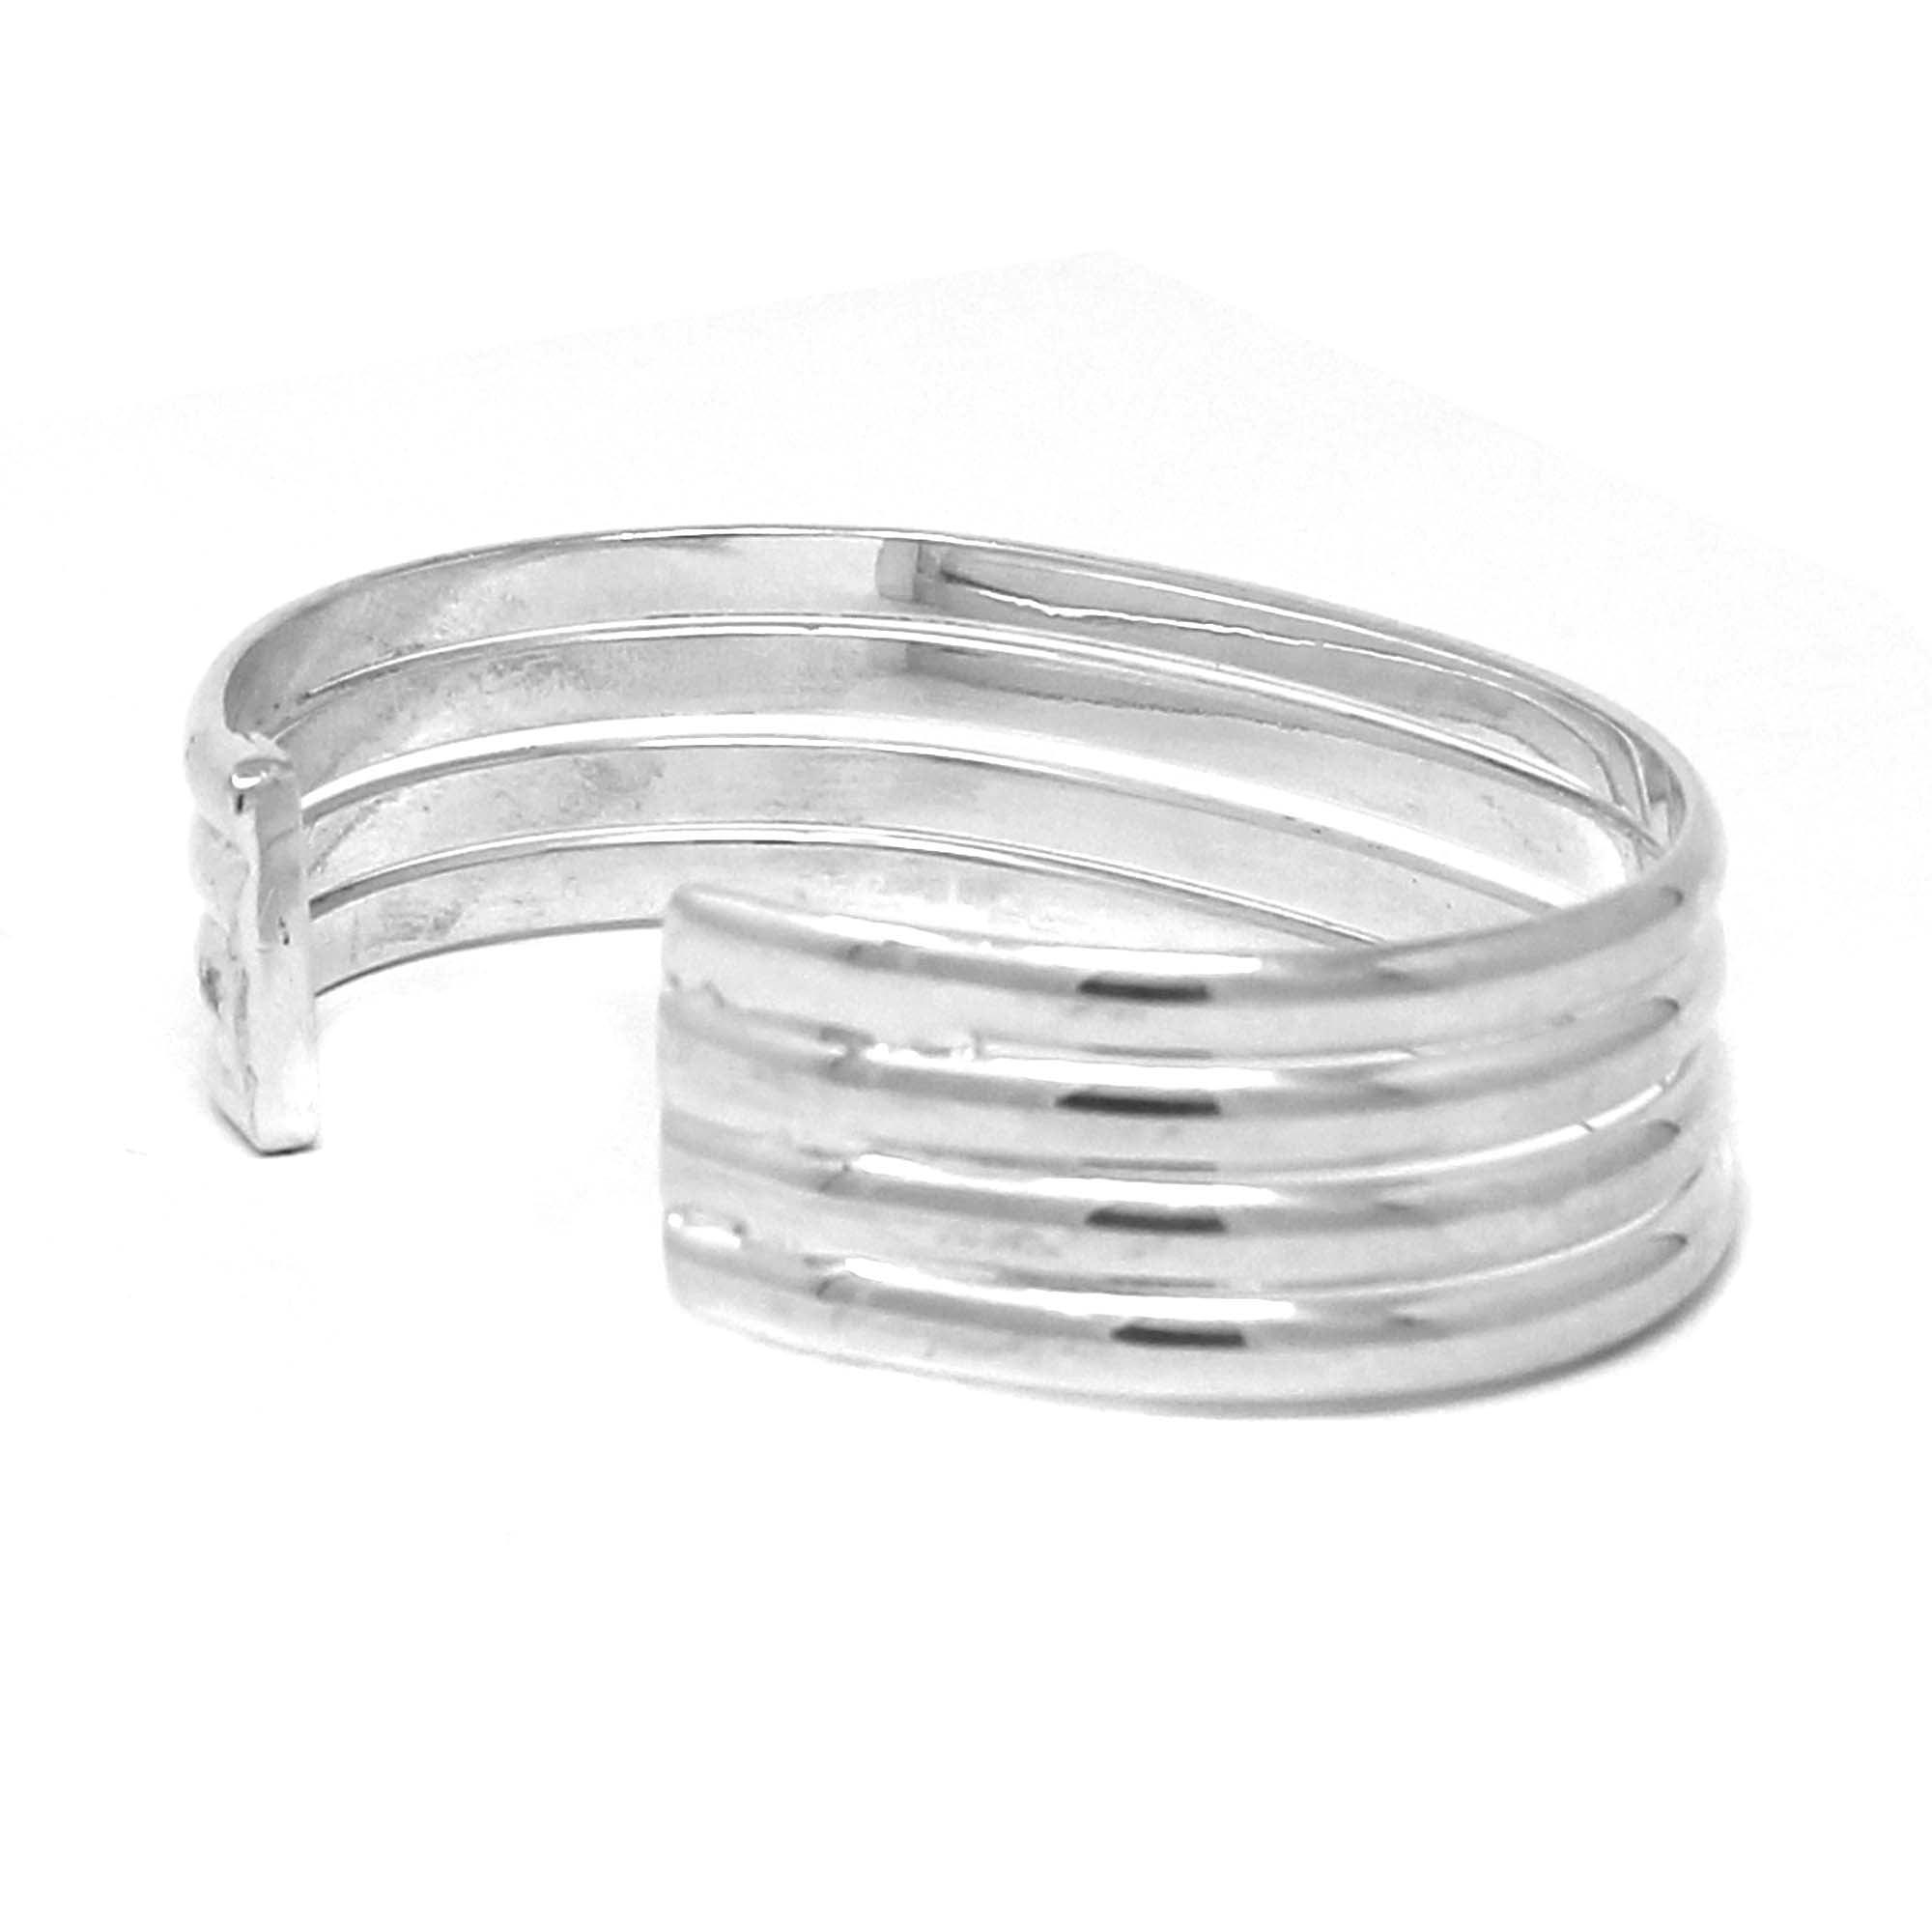 Alpaca Silver Overlay Cuff Bracelet - Four Bar Design - Flyclothing LLC